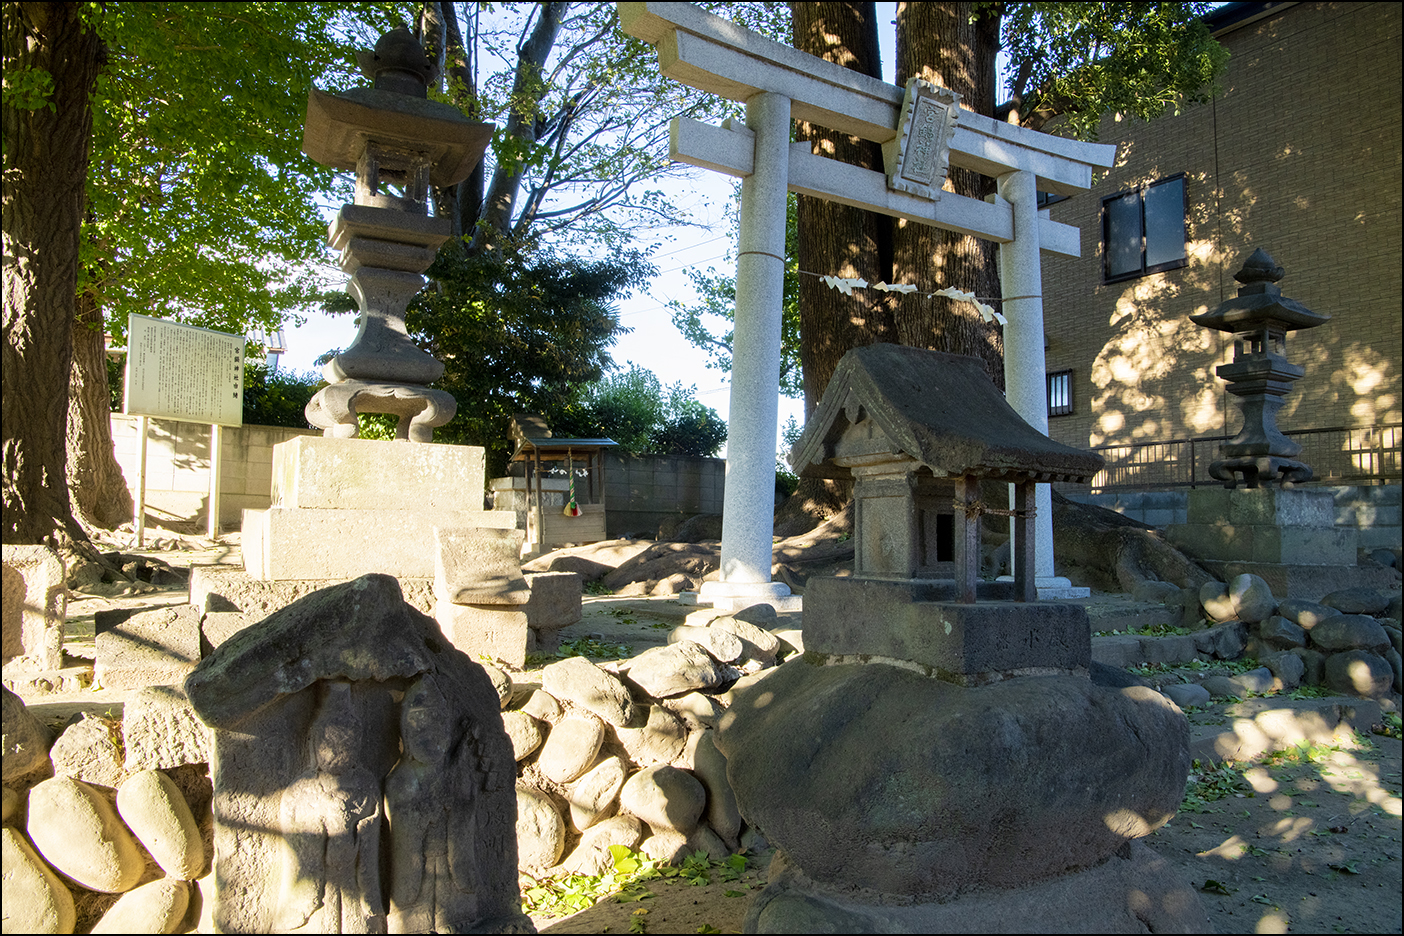 宮鍋神社